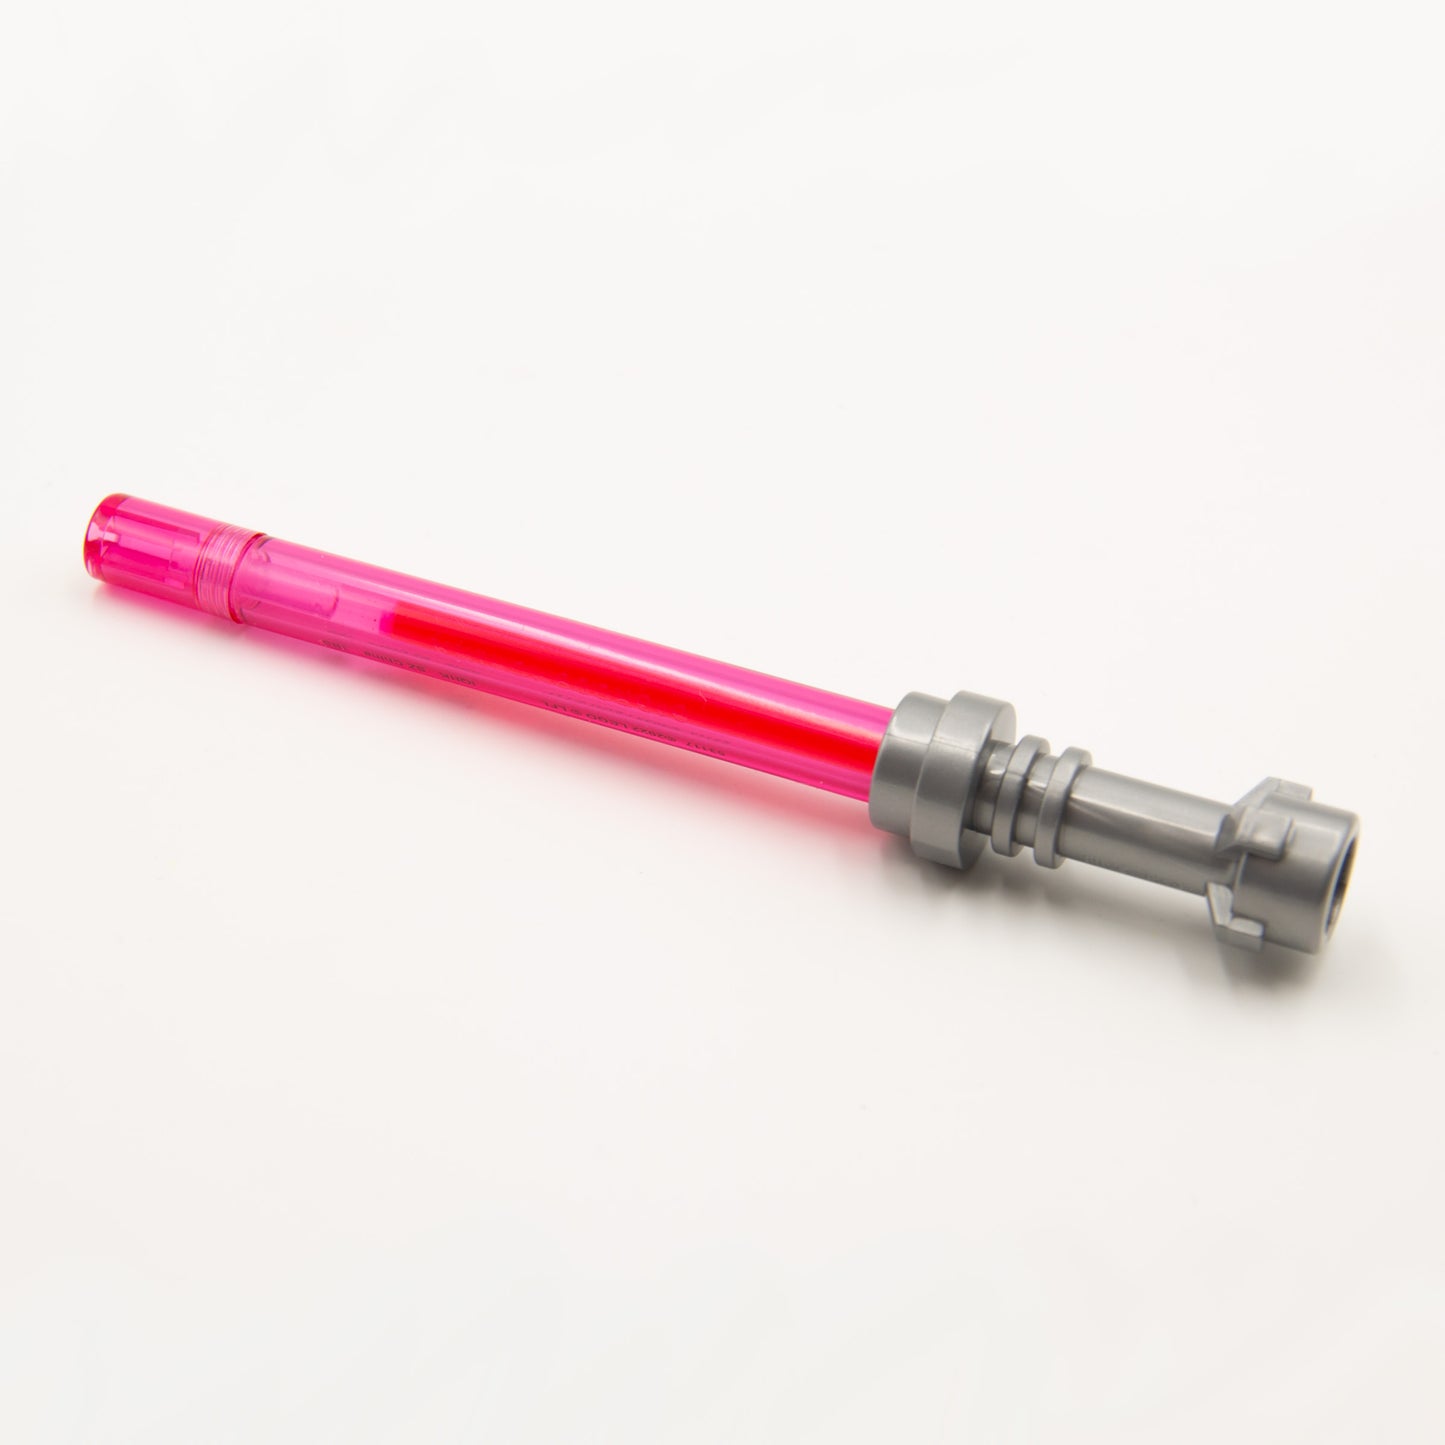 LEGO Star Wars Lightsaber Gel Pen 10 Pack